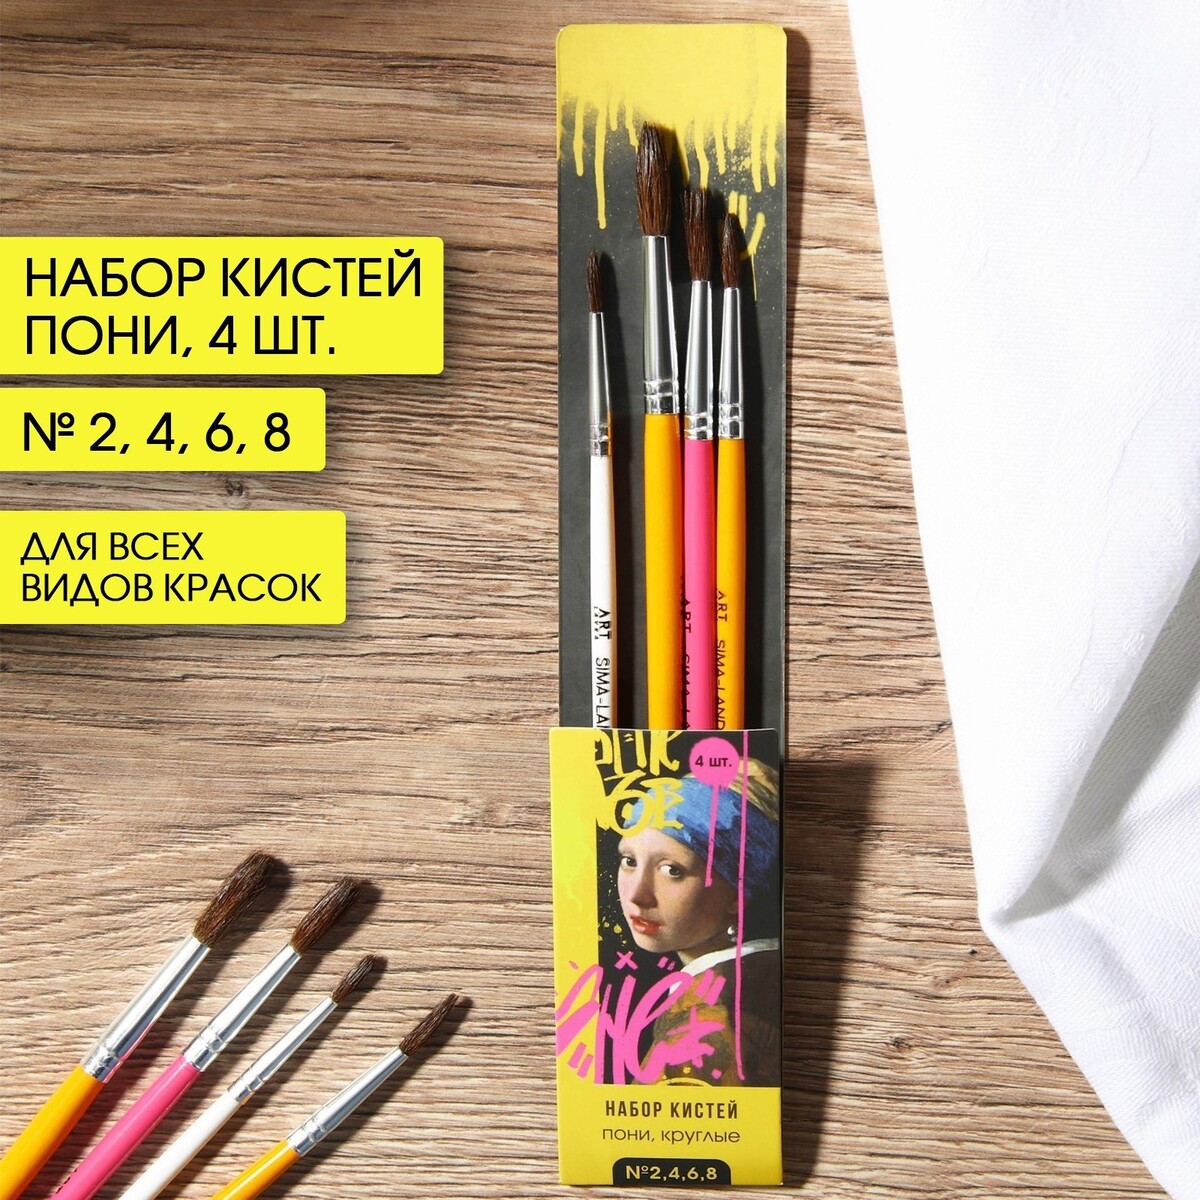 Кисть для рисования набор 4 шт. пони круглые № 2, 4, 6, 8 набор для рисования классический 7 шт чернографитный карандаш пастельный карандаш без масла 3шт пастельный карандаш масляный 3шт растуше